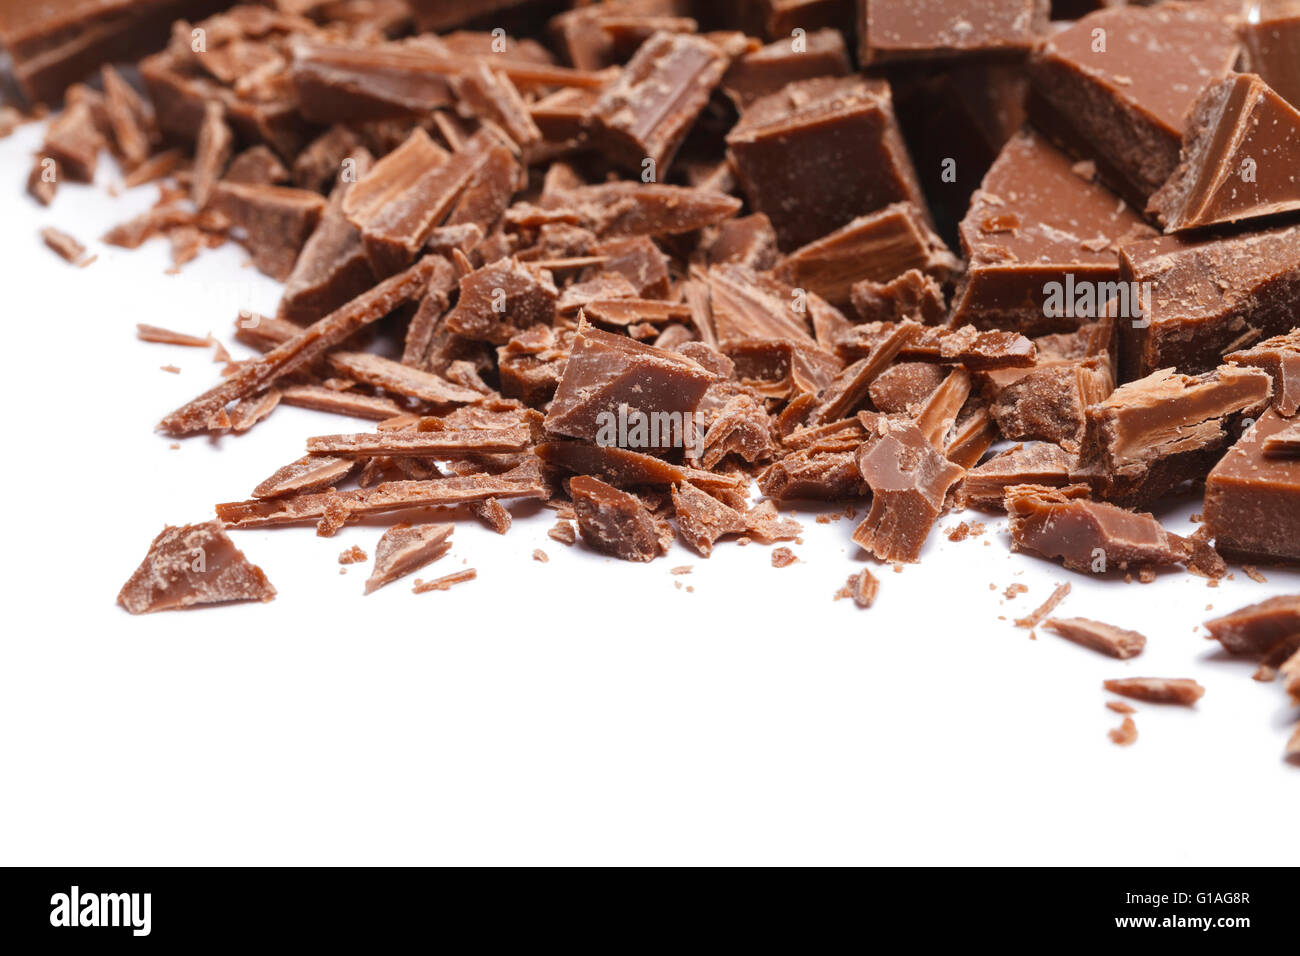 Stapel gebrochen und rasierte Schokoladenstücke, Isolated on White Background. Stockfoto